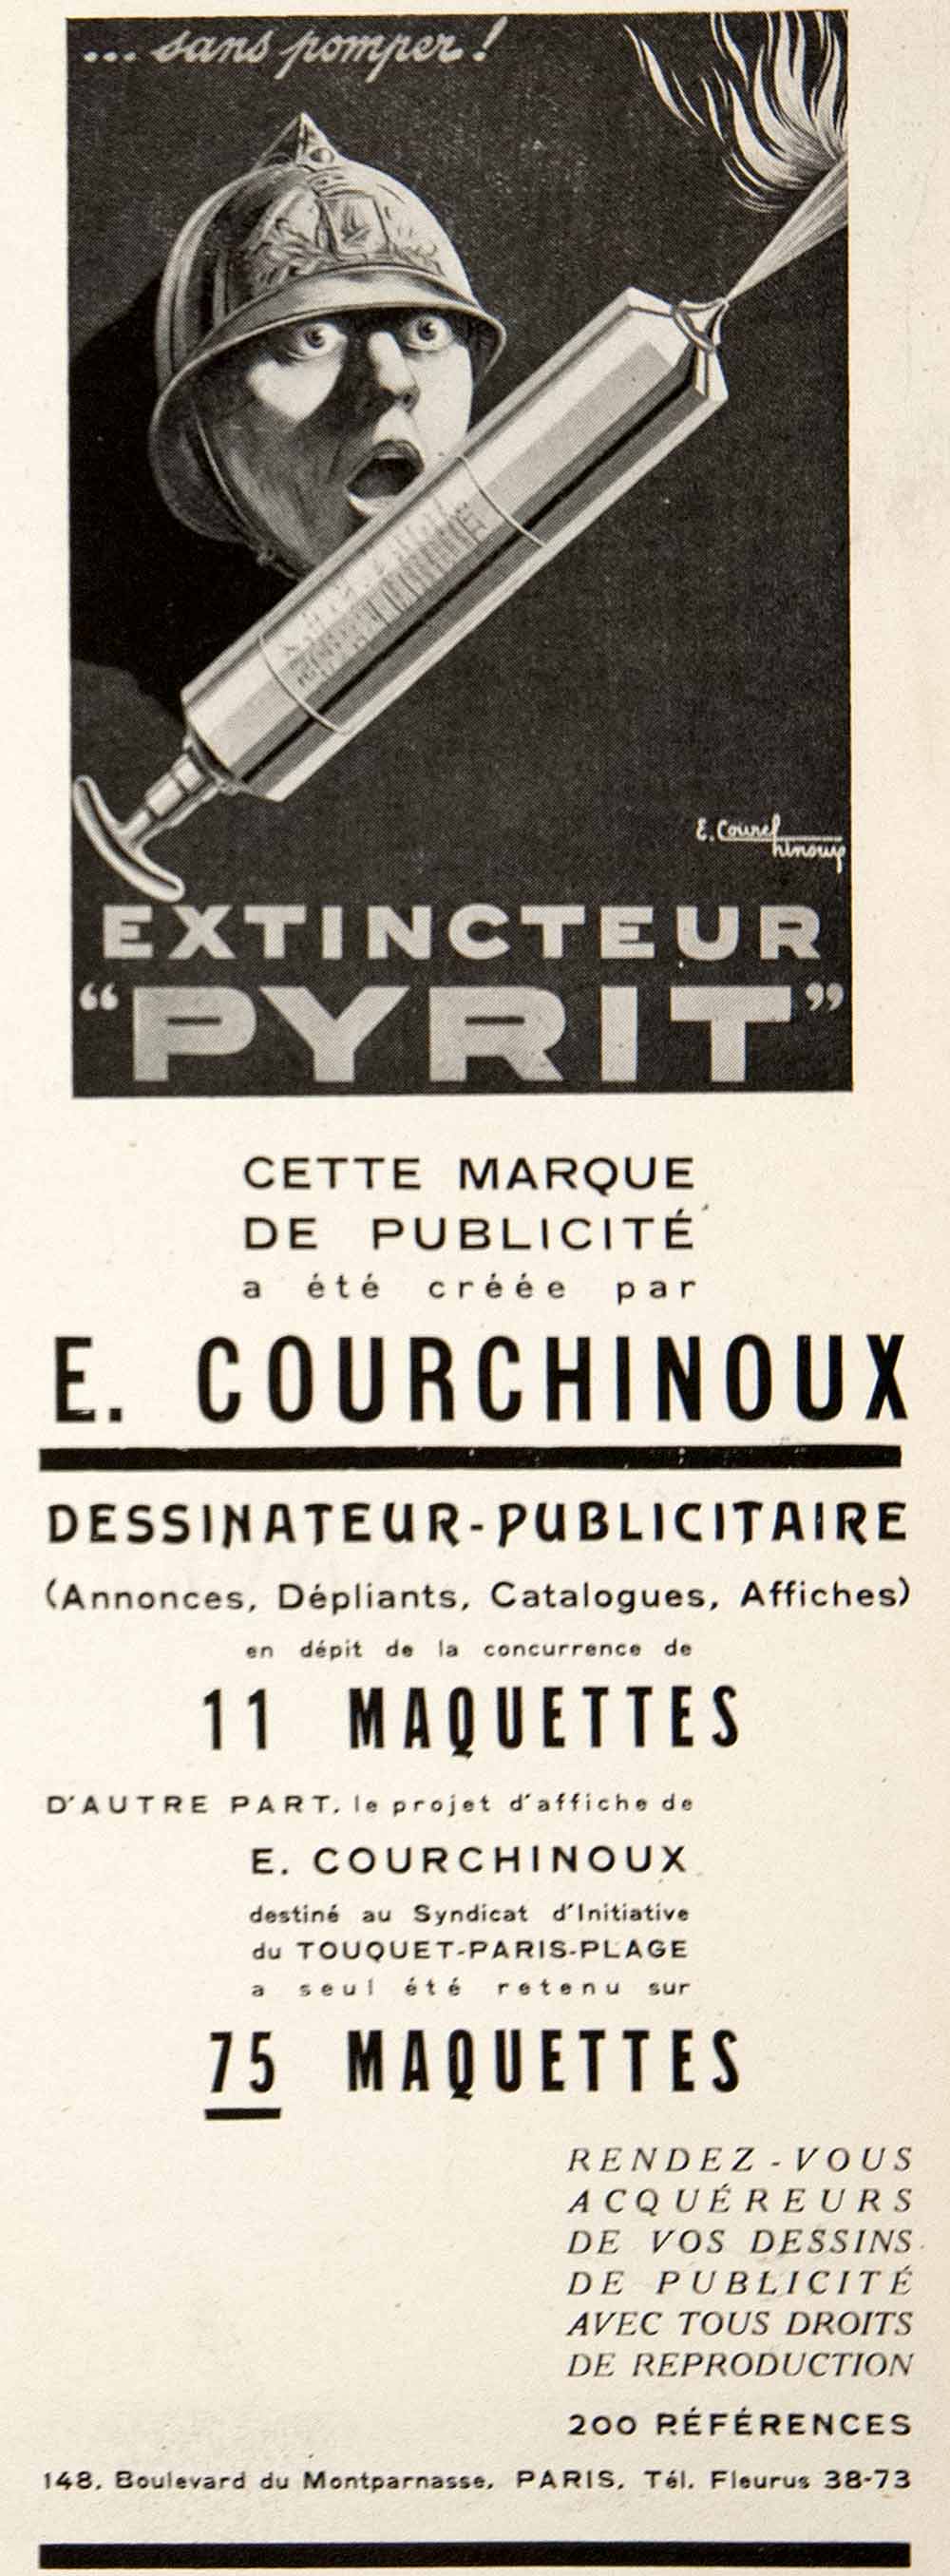 1925 Ad Artist E Courchinoux Marketing 148 Boulevard Montparnasse Paris VEN4